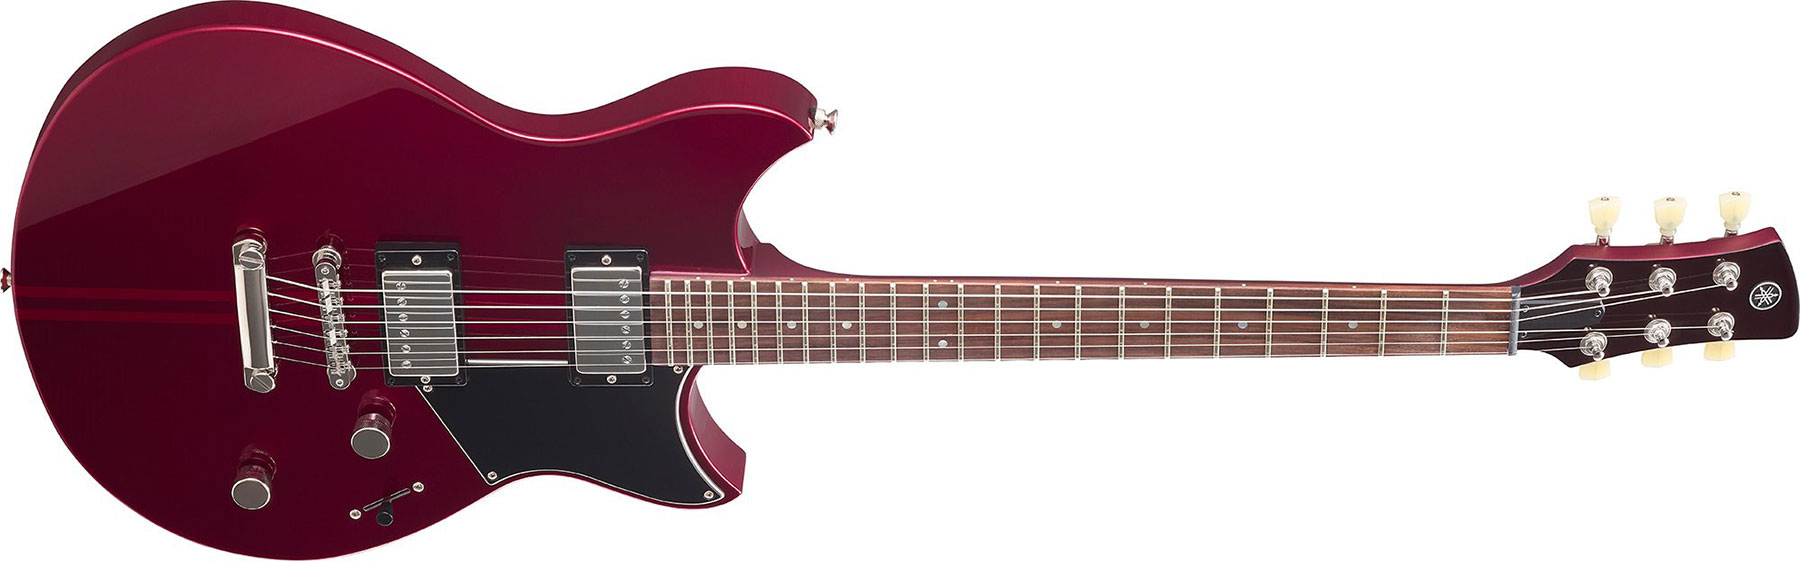 Yamaha Rse20 Revstar Element Hh Ht Rw - Red Copper - Guitarra eléctrica de doble corte. - Variation 1